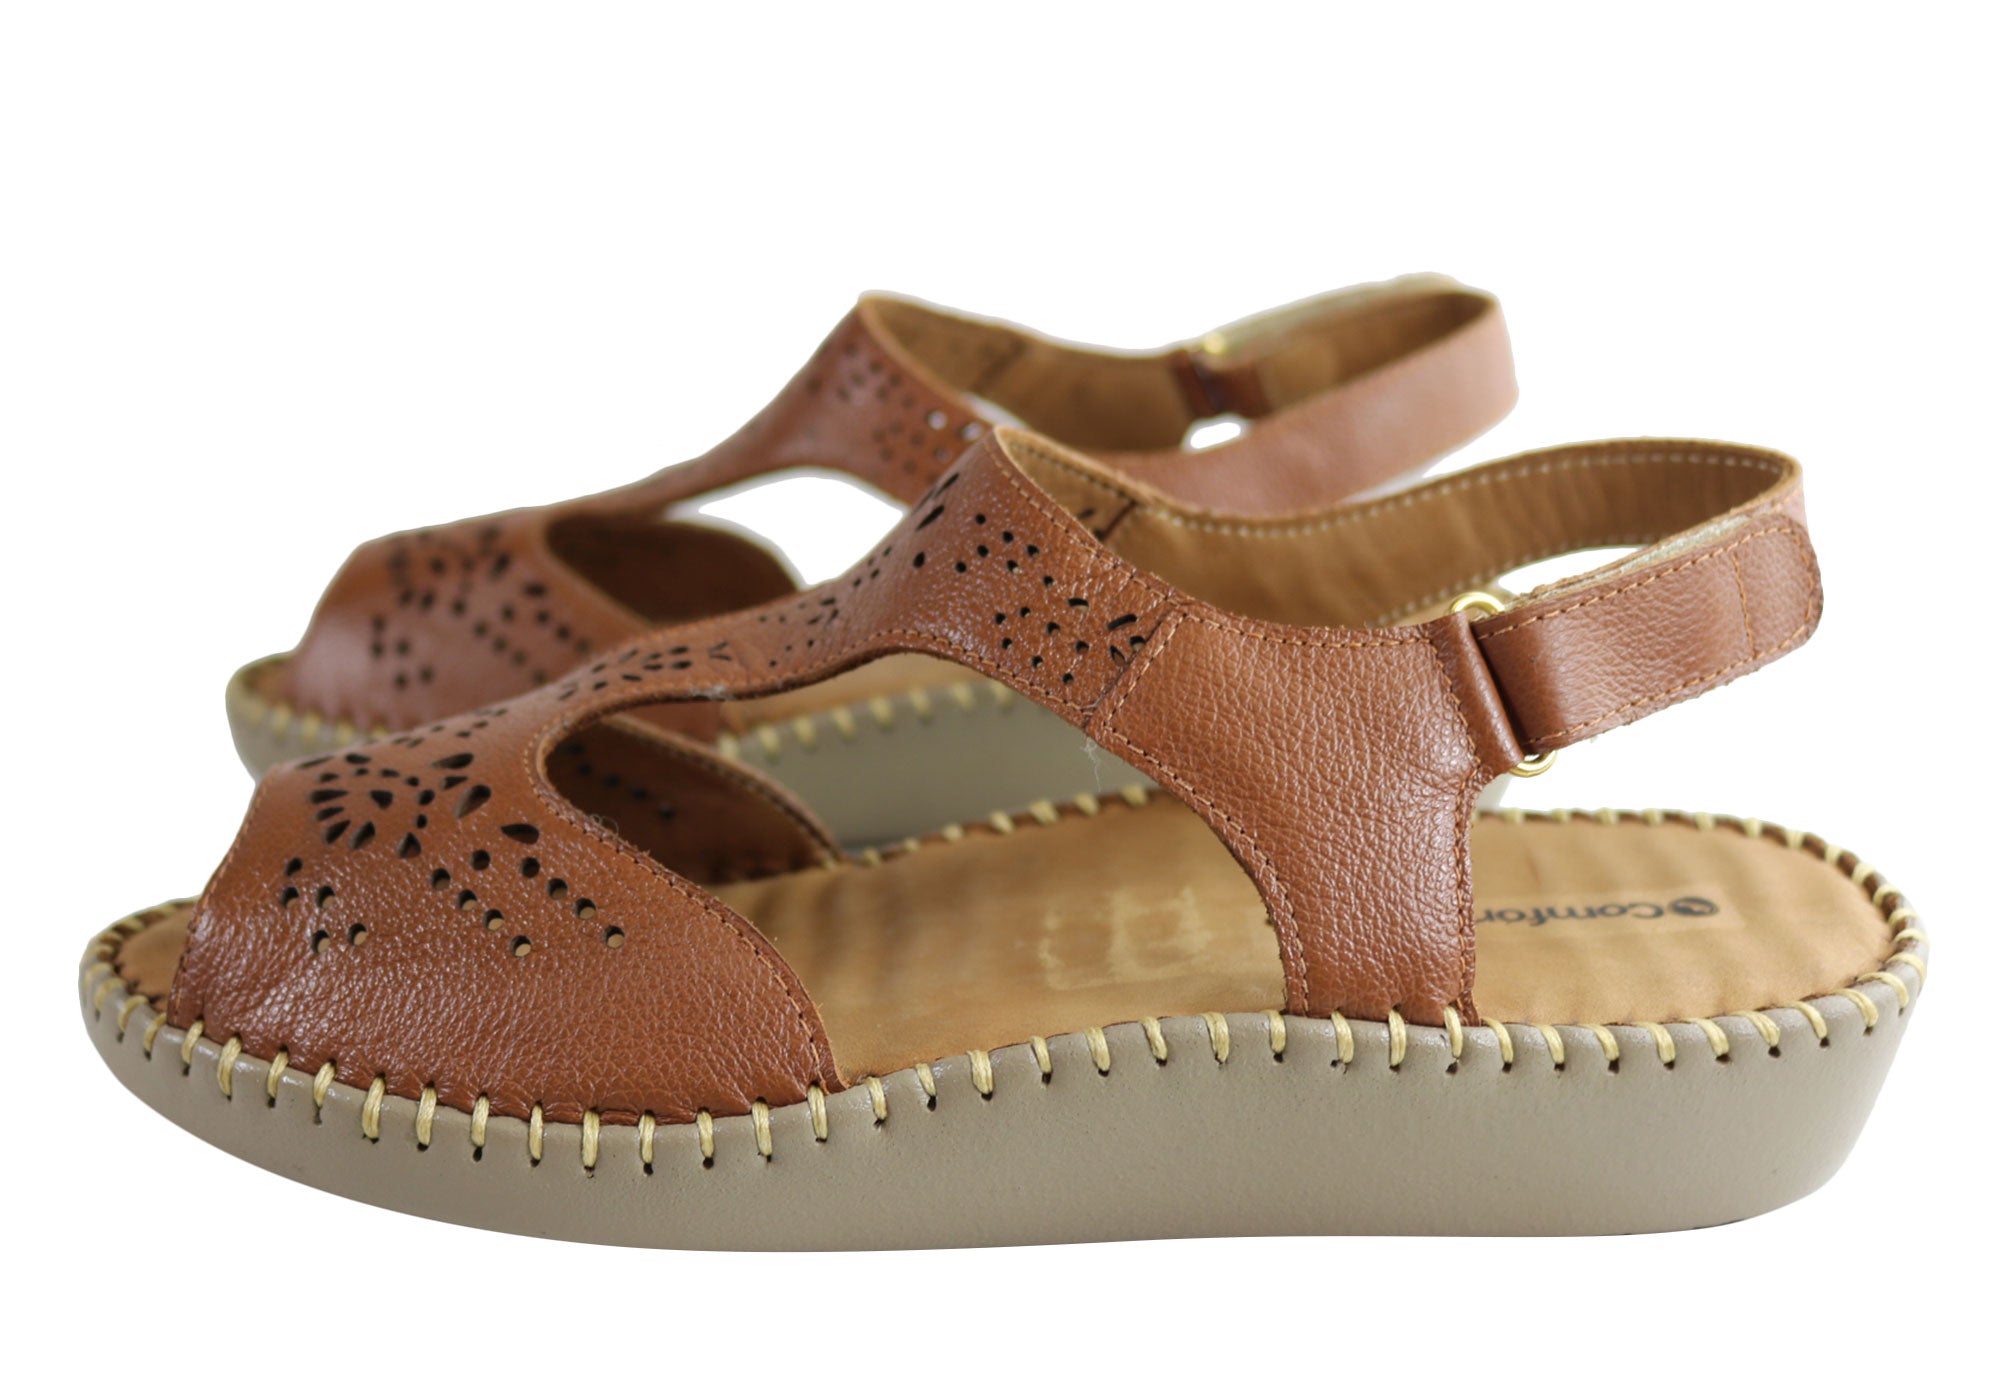 Comfortshoeco Maxine Womens Leather Brazilian Comfortable Sandals